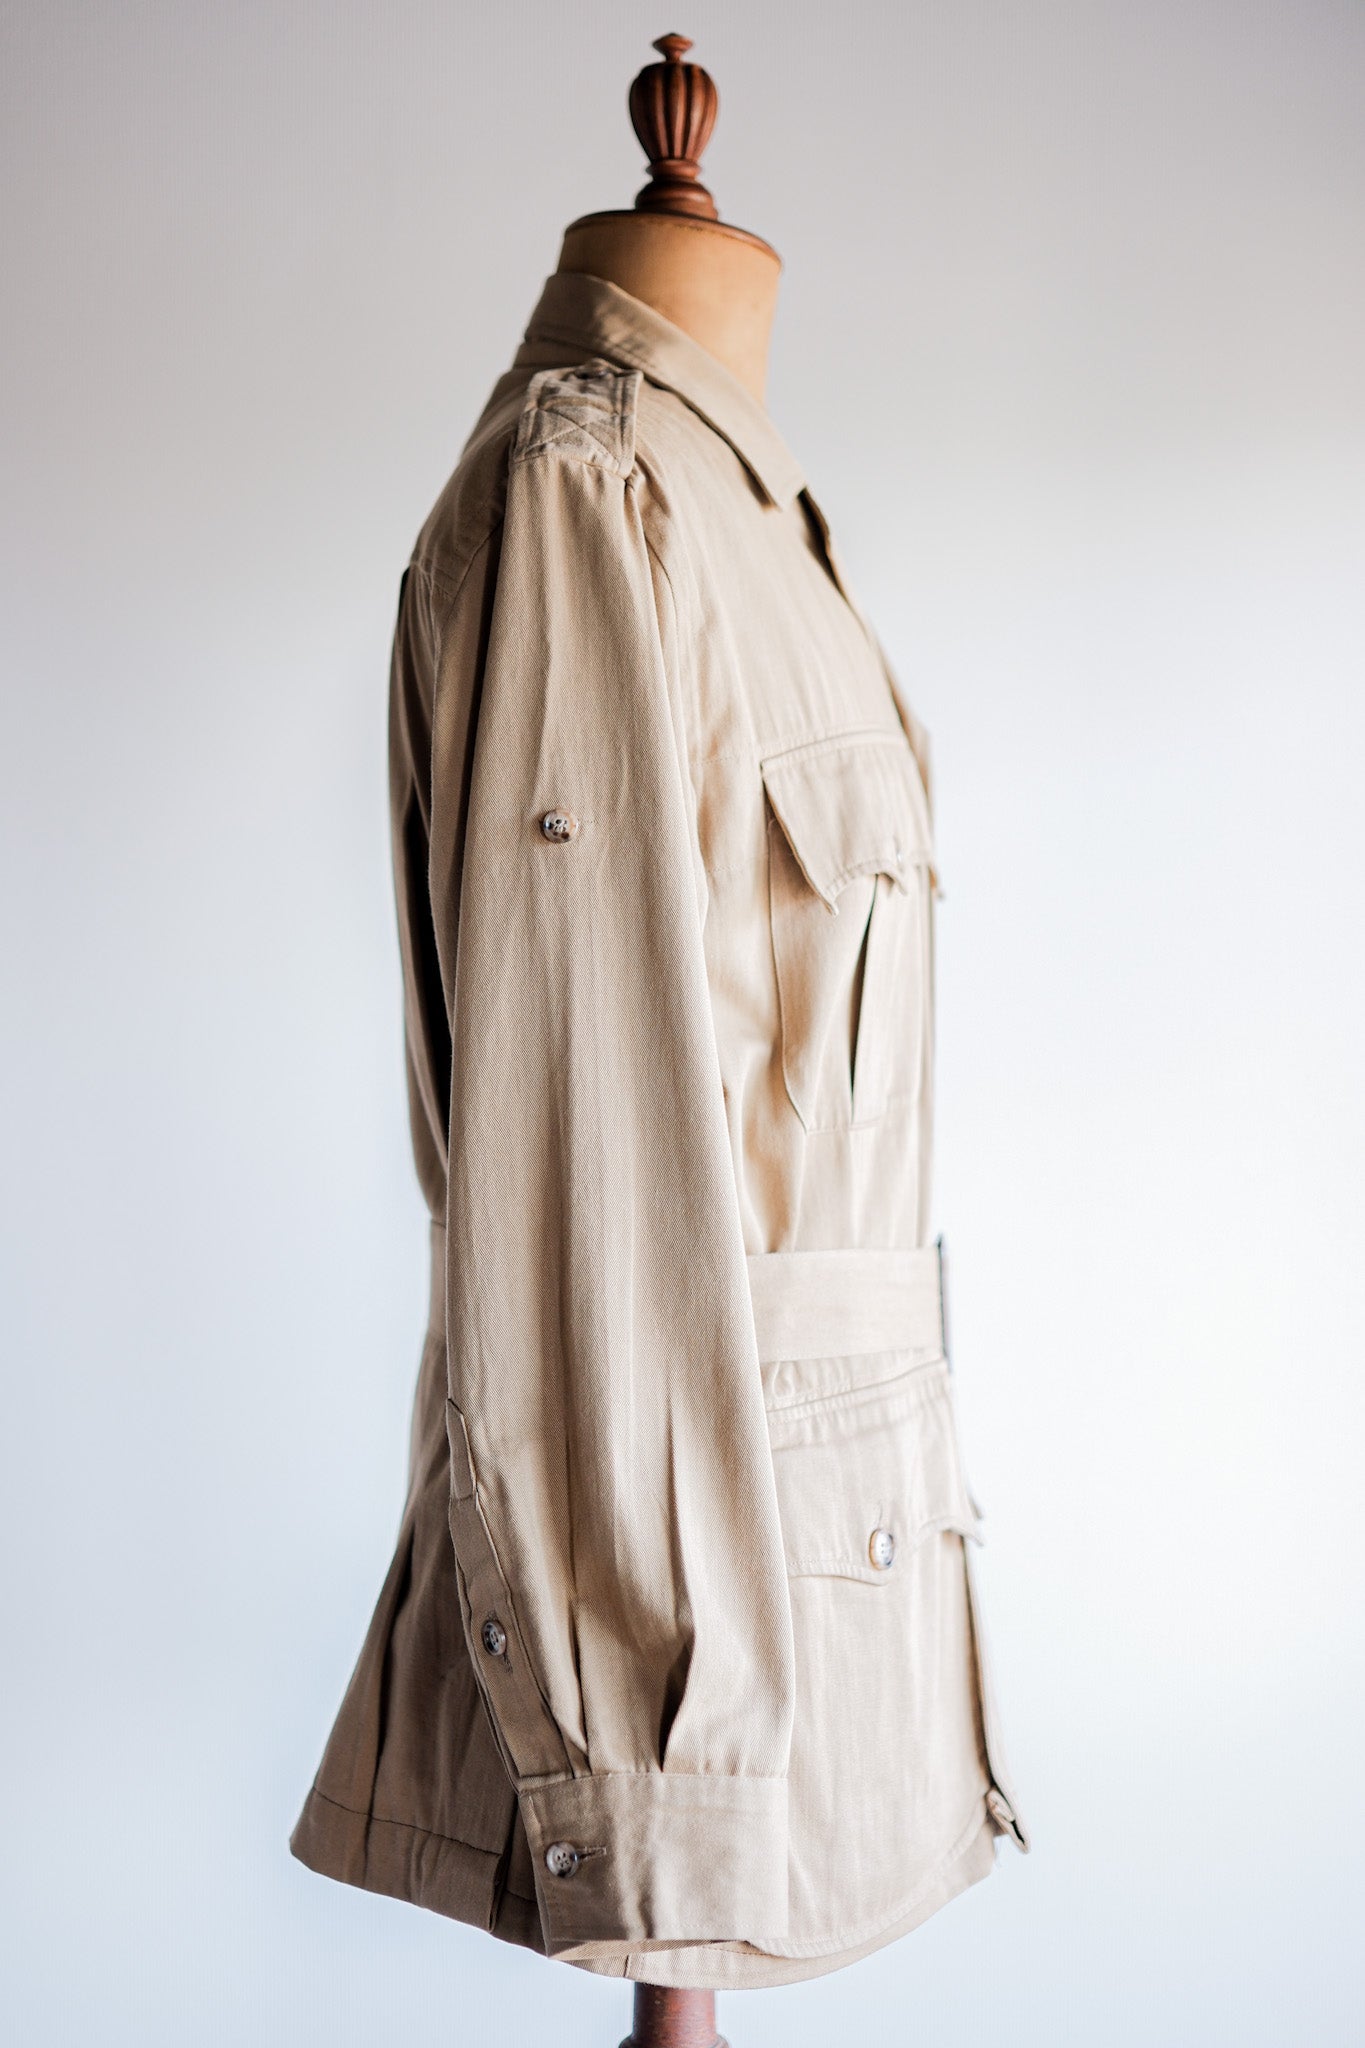 [~80 年代] Willis&Geiger 澳洲叢林夾克尺寸 38“美國製造”